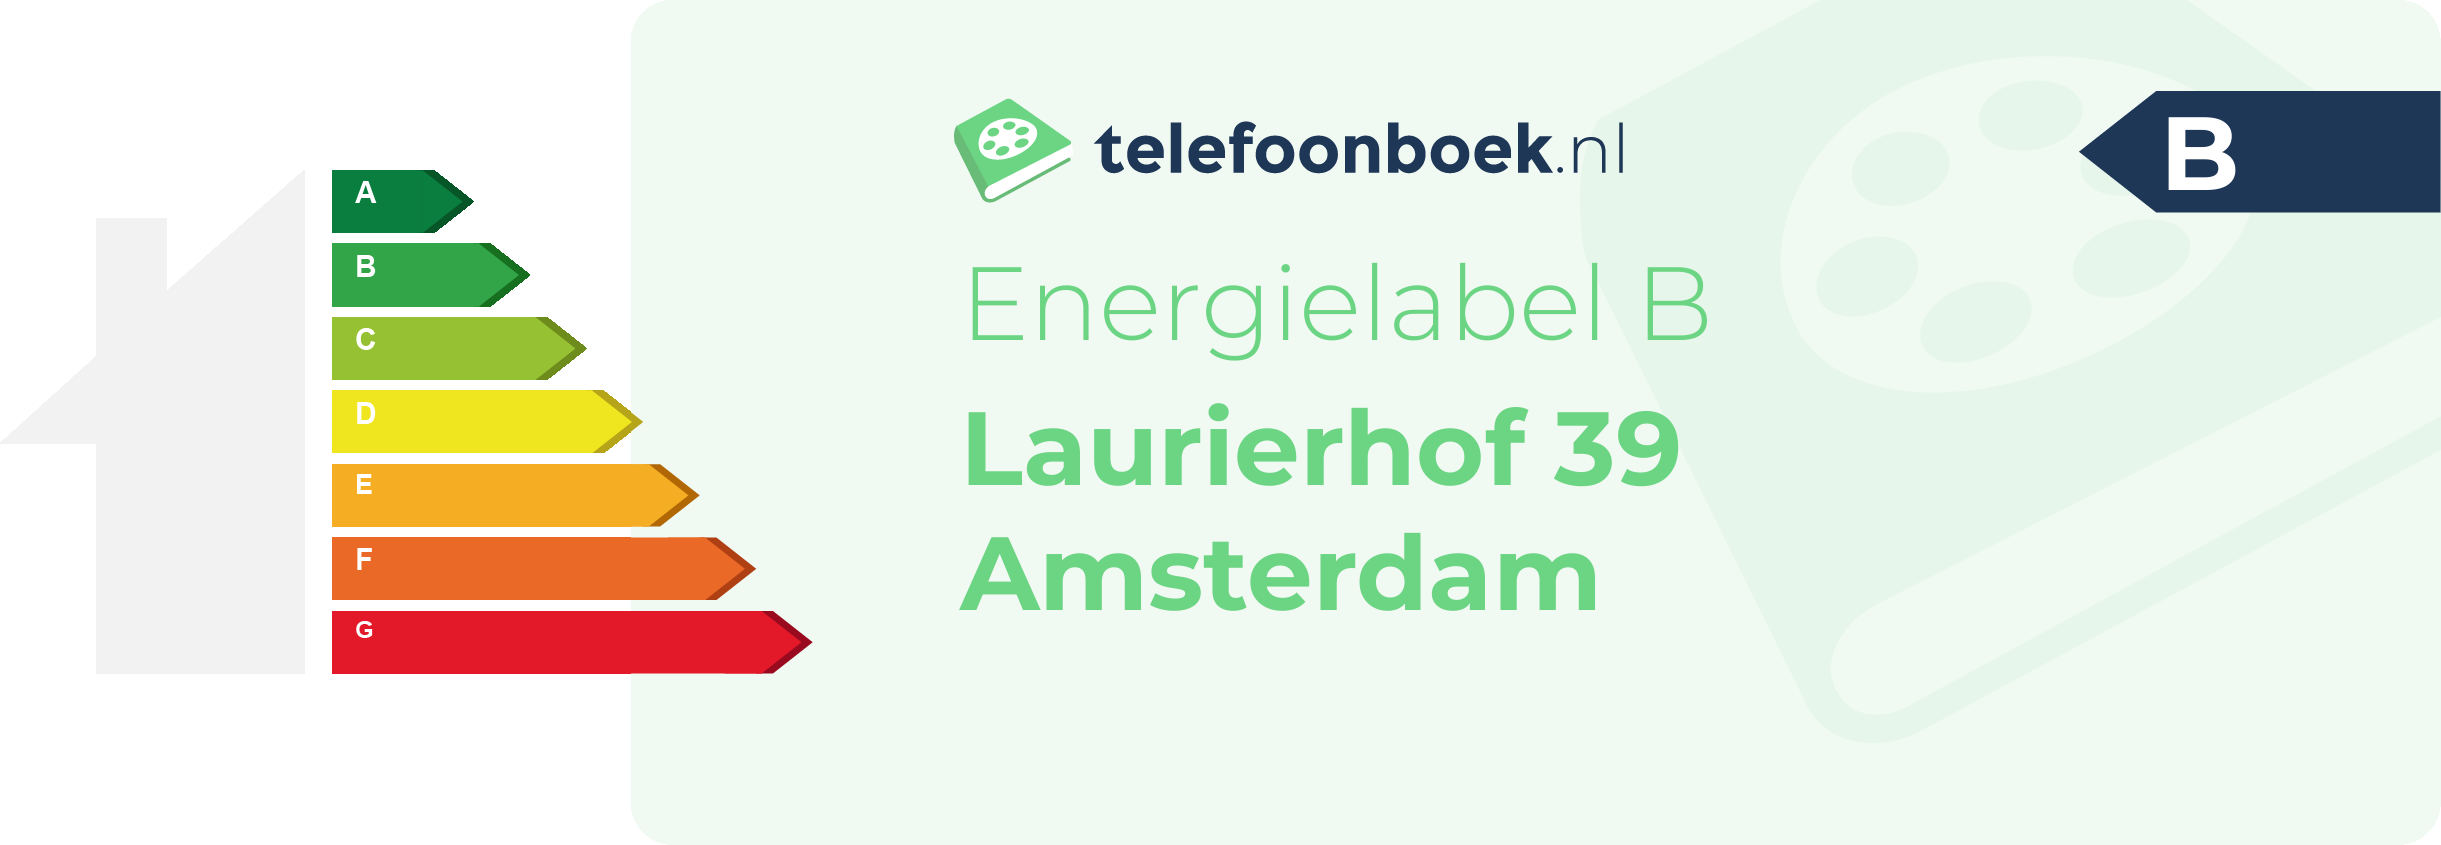 Energielabel Laurierhof 39 Amsterdam